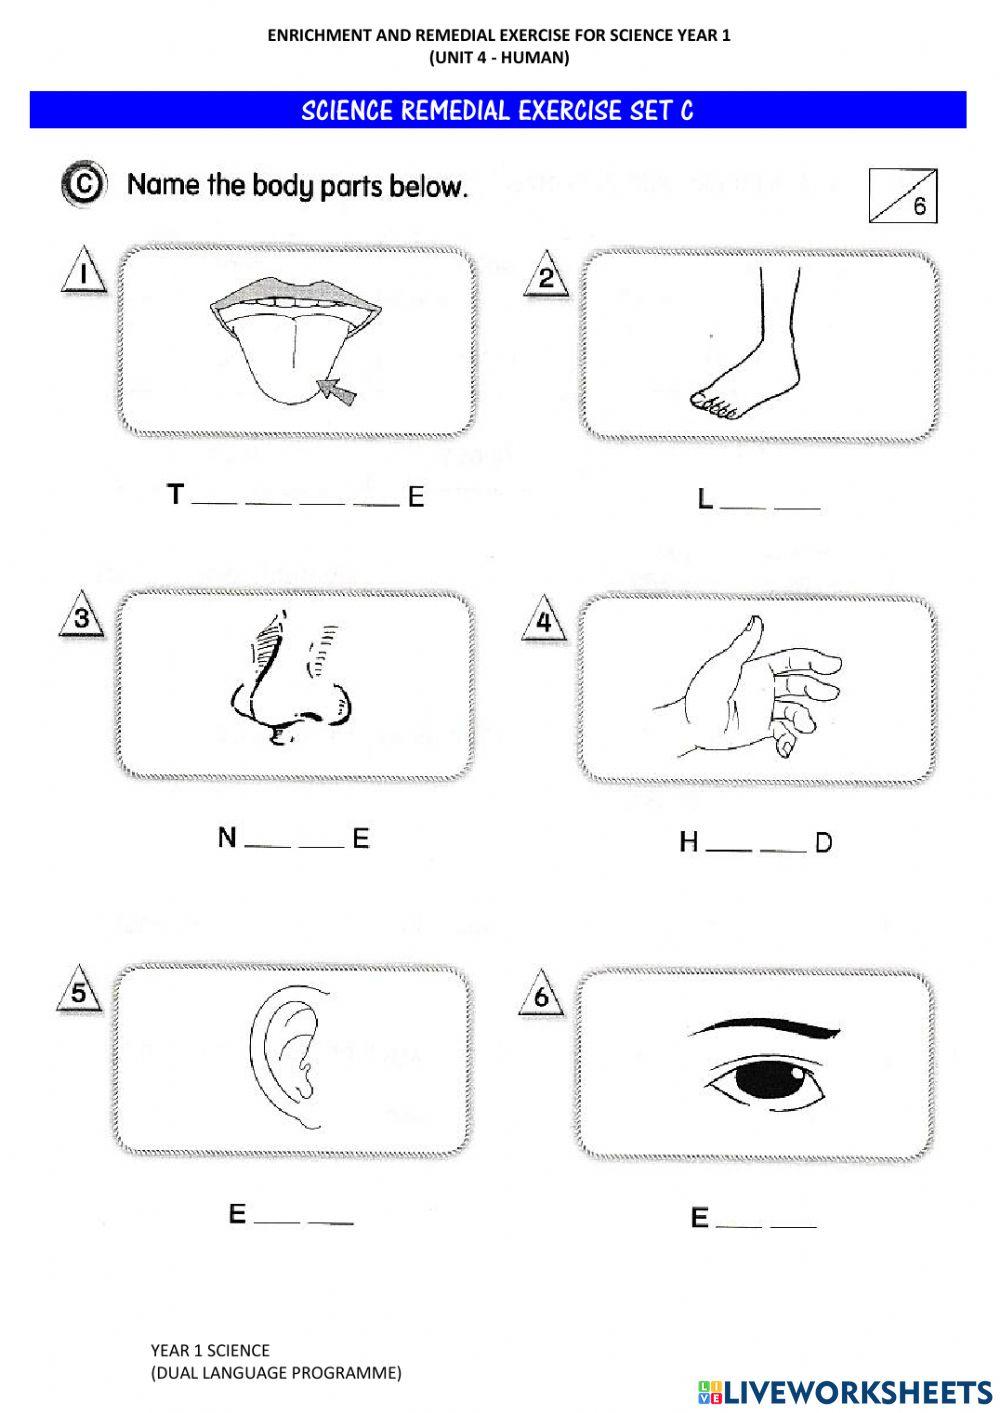 Human's Five Senses (Remedial Set)